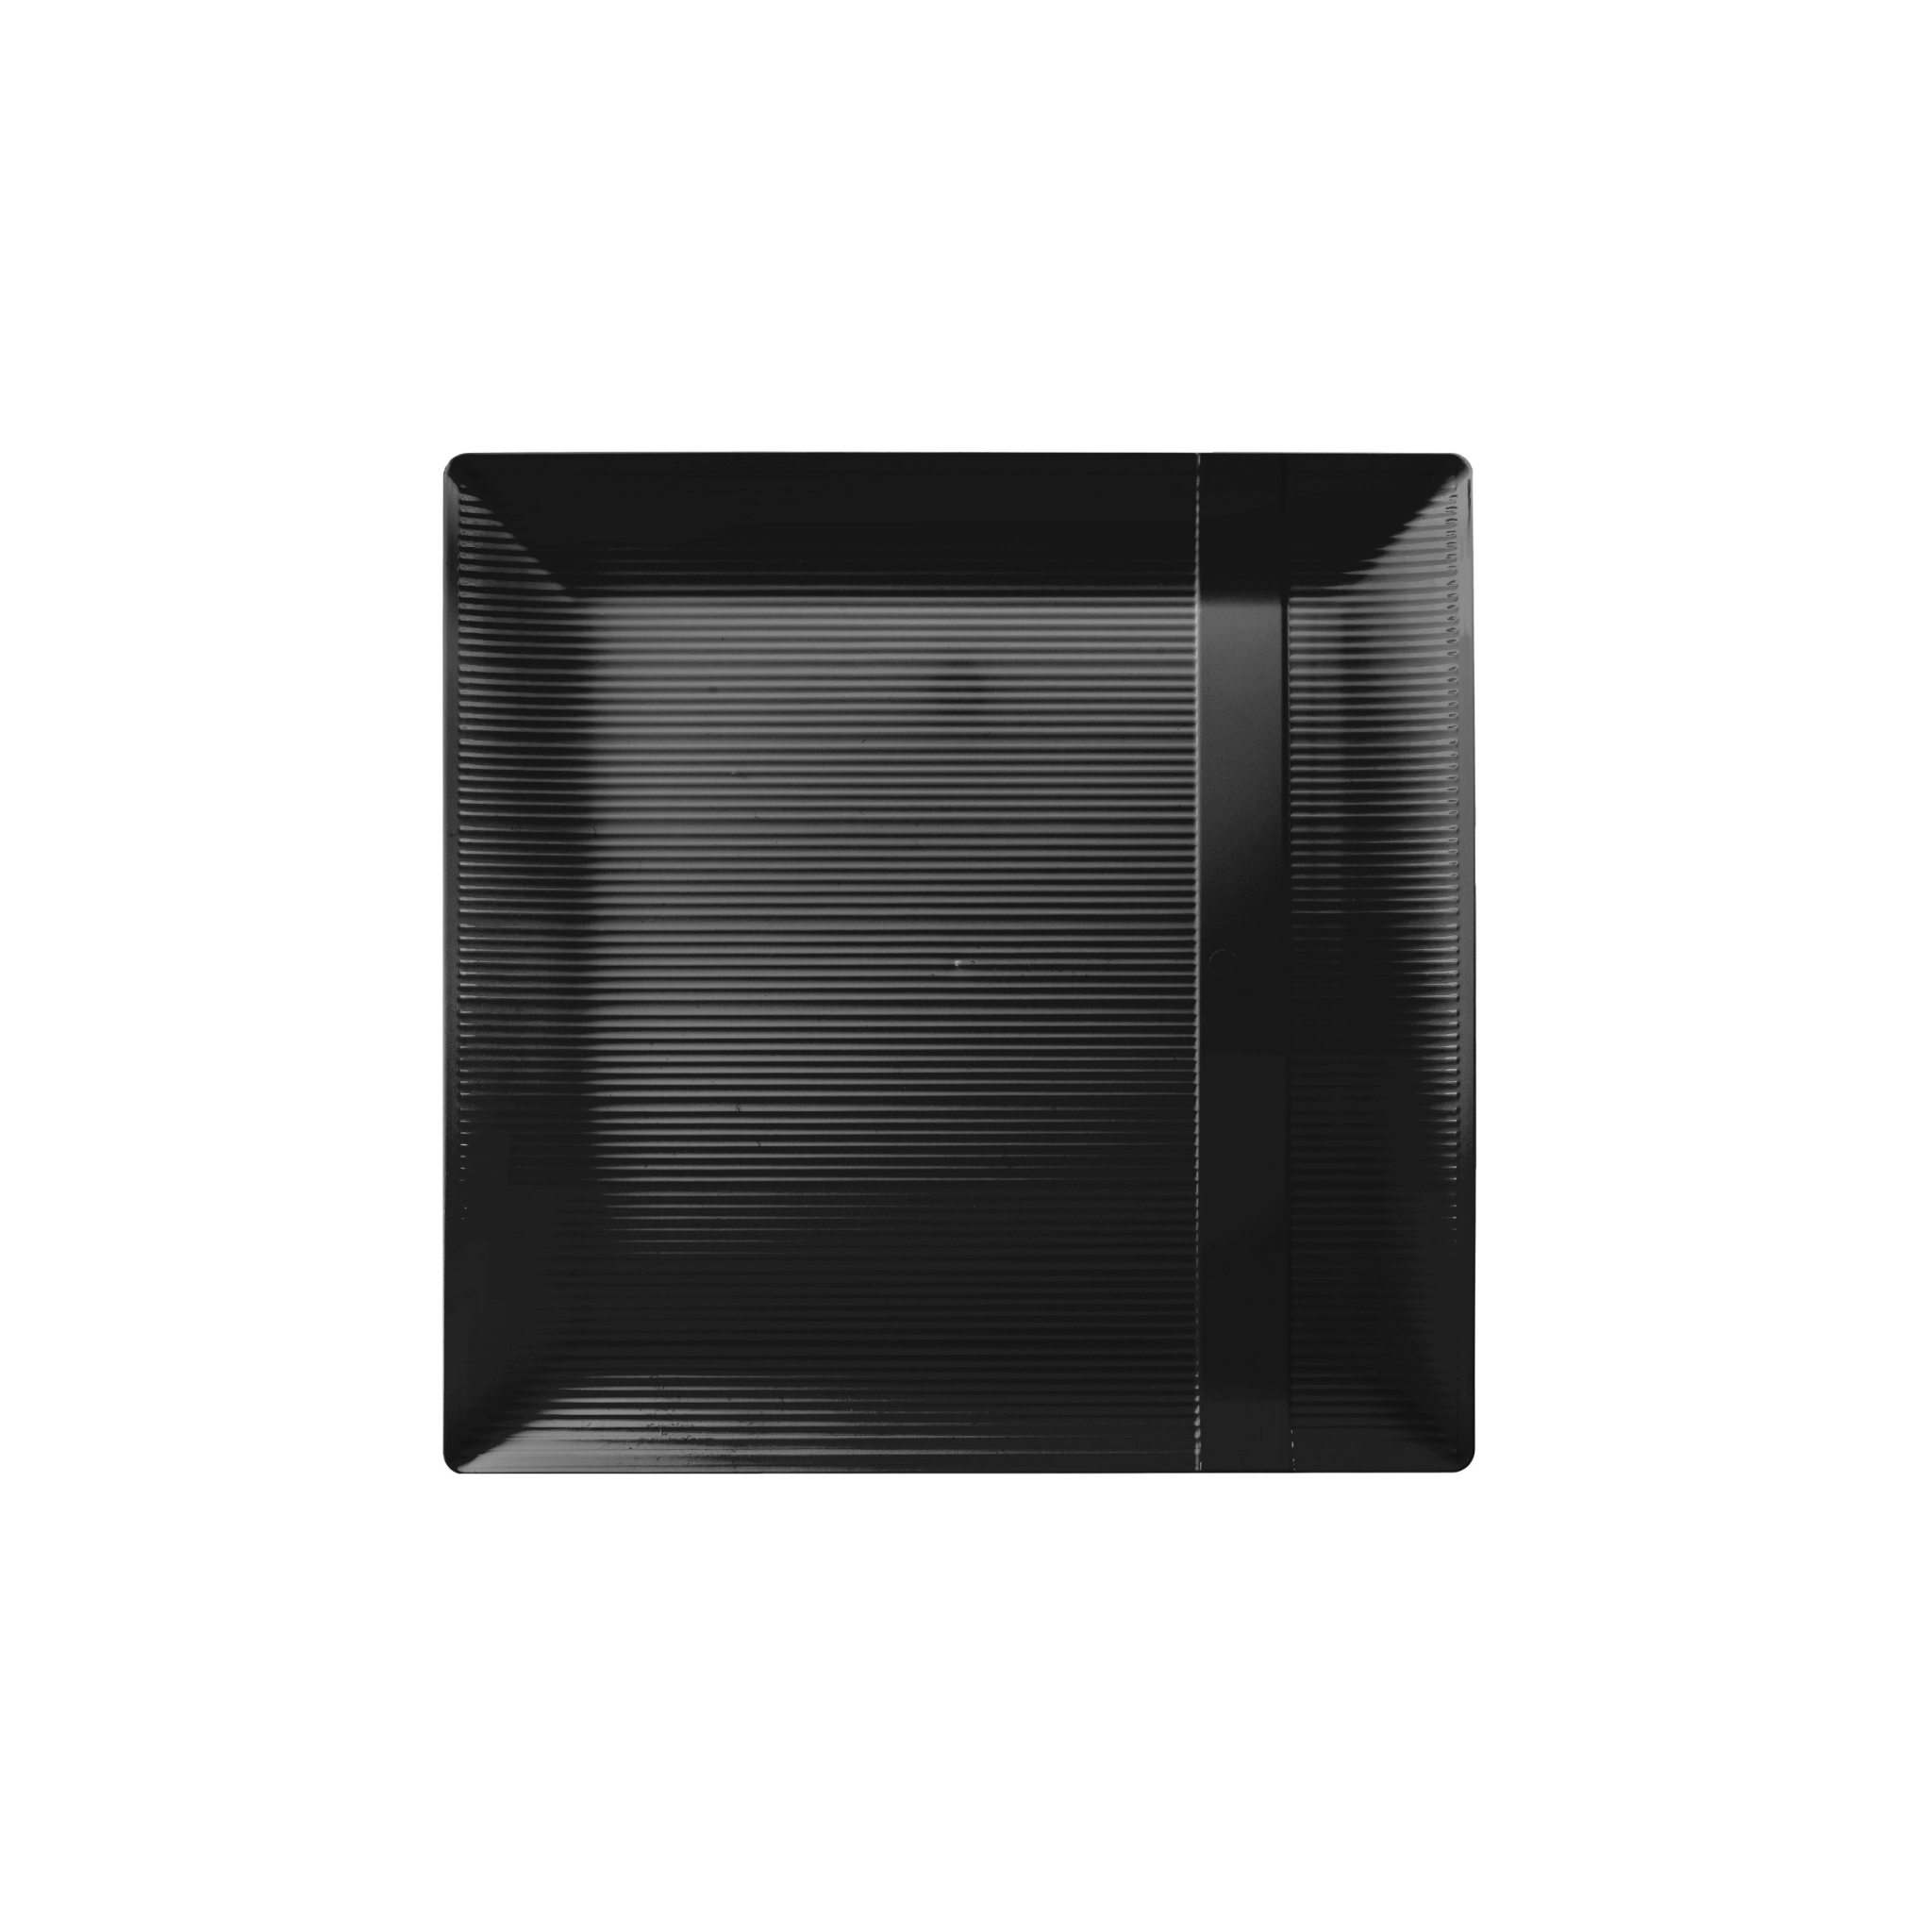 6.5" Zen Ridged Black Square Plastic Plates (120 Count) - Yom Tov Settings